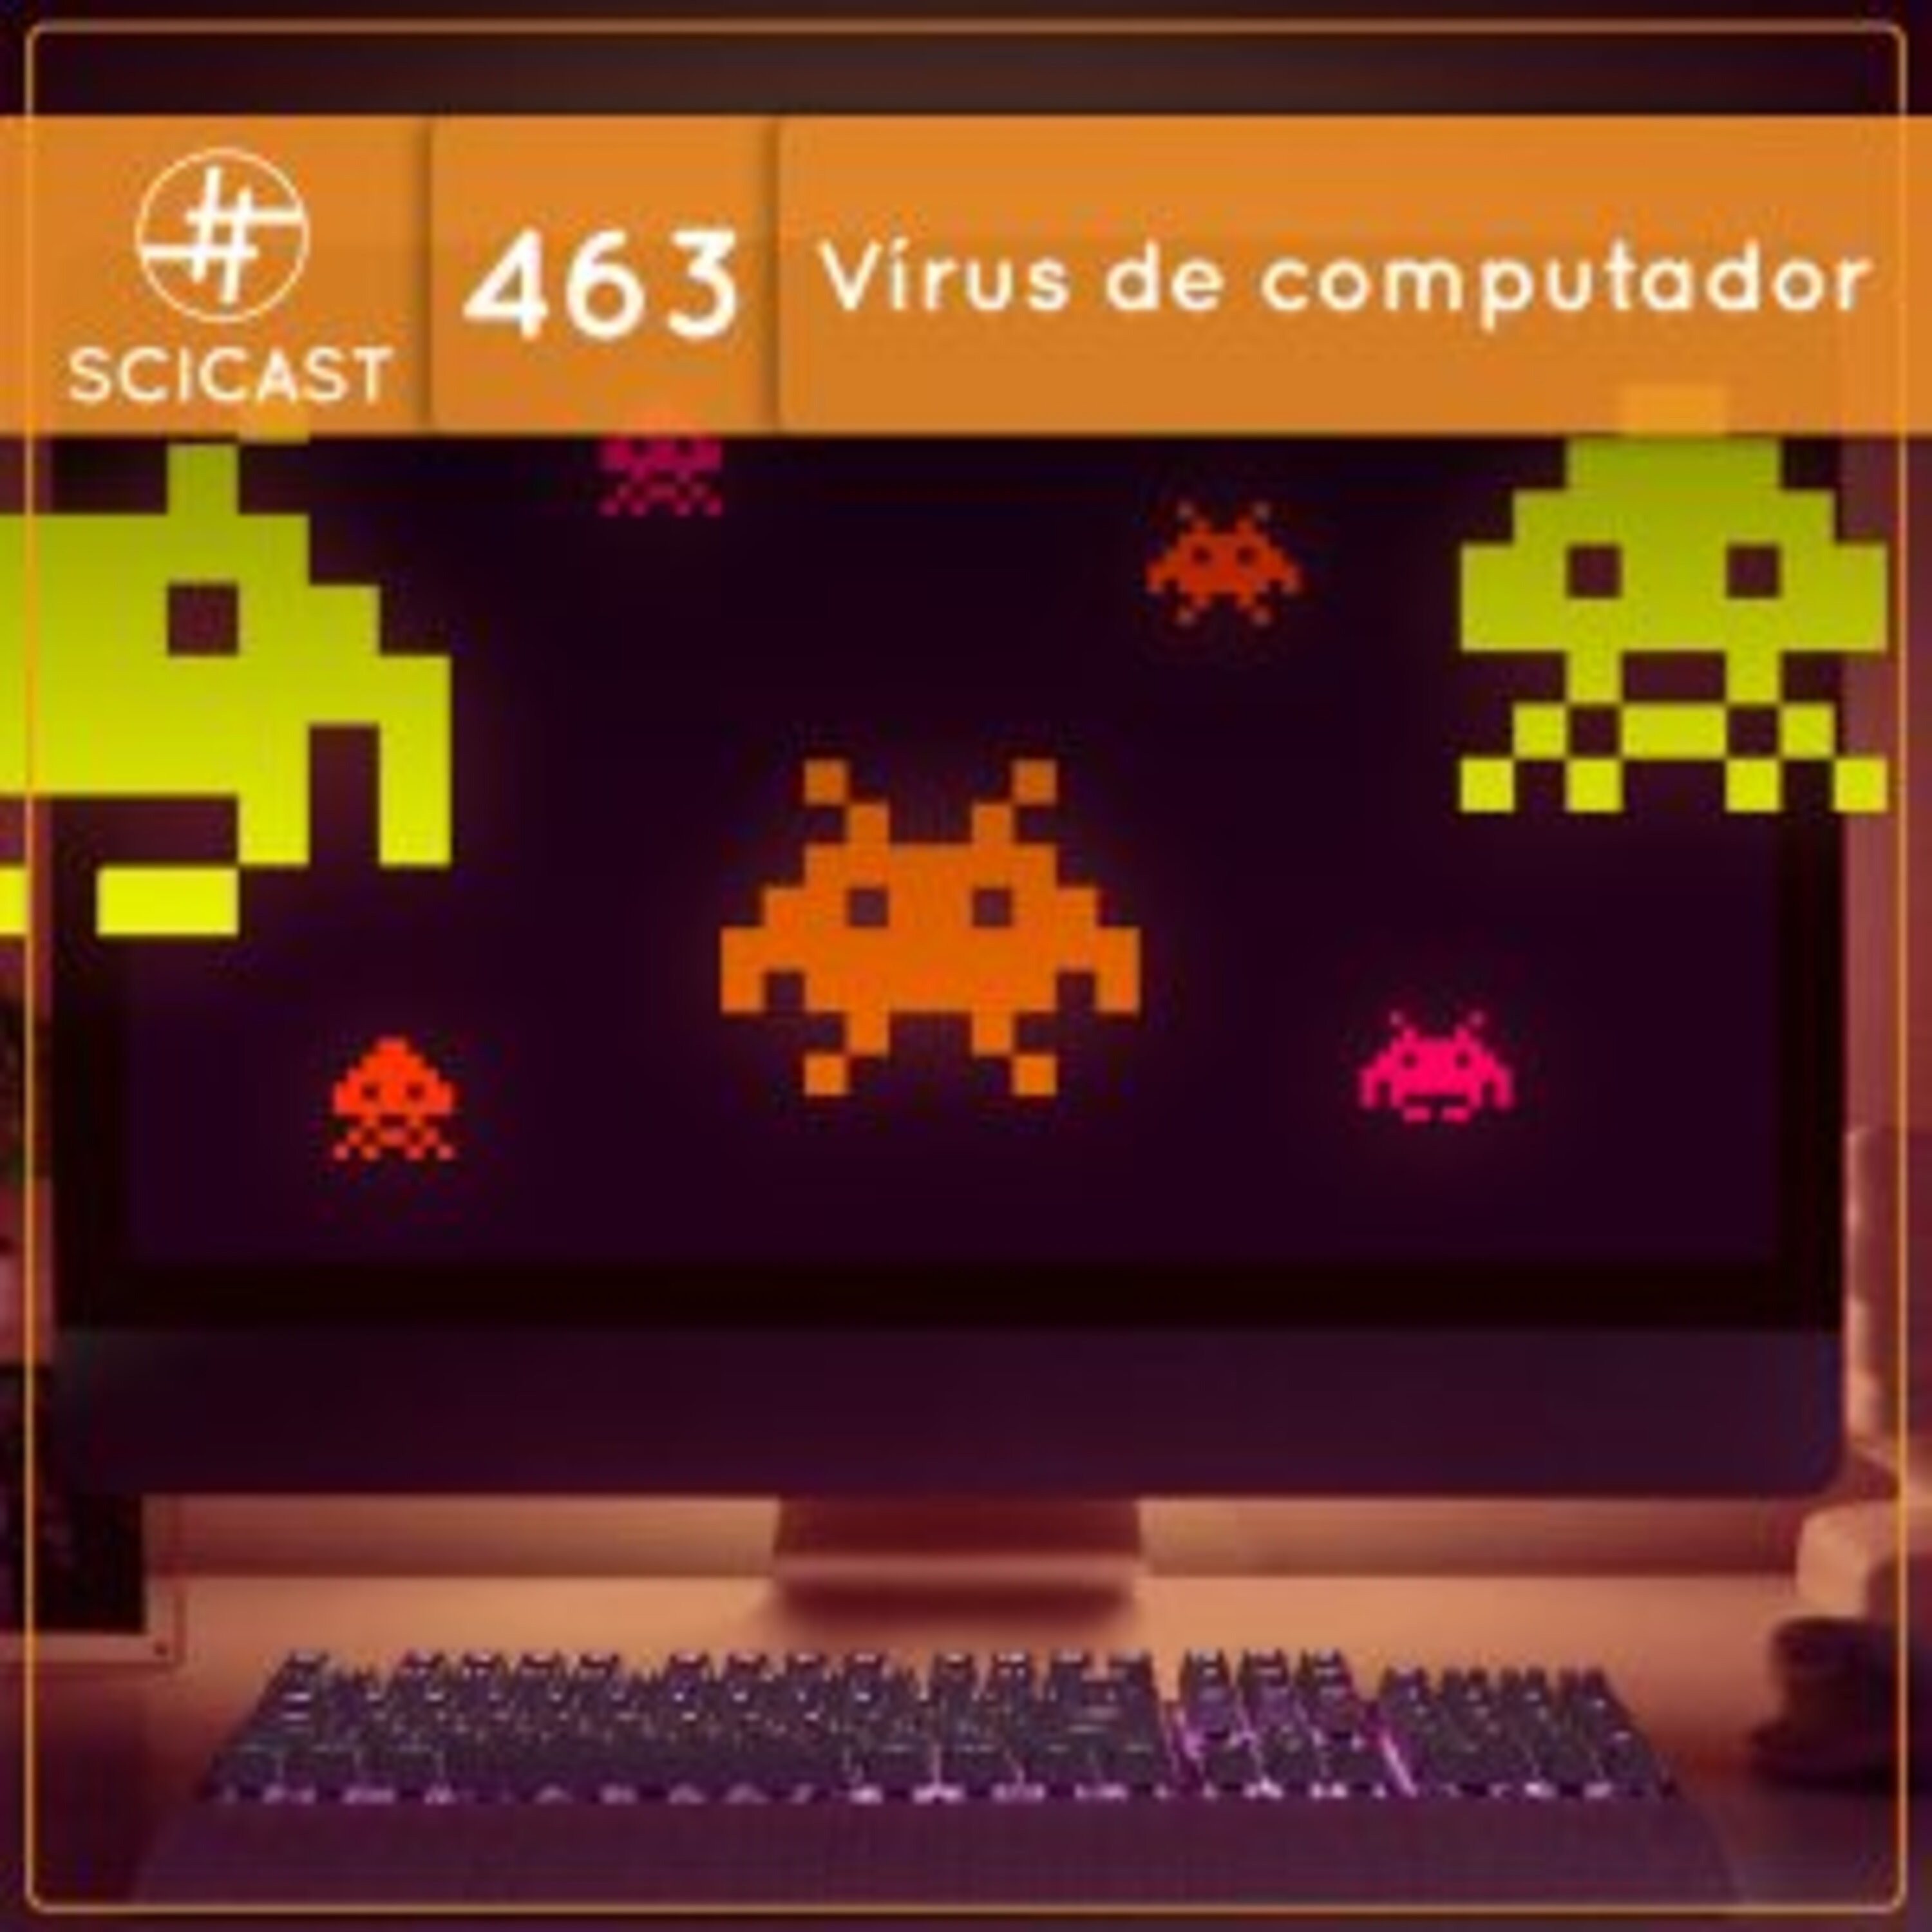 Vírus de computador.exe (SciCast #463)